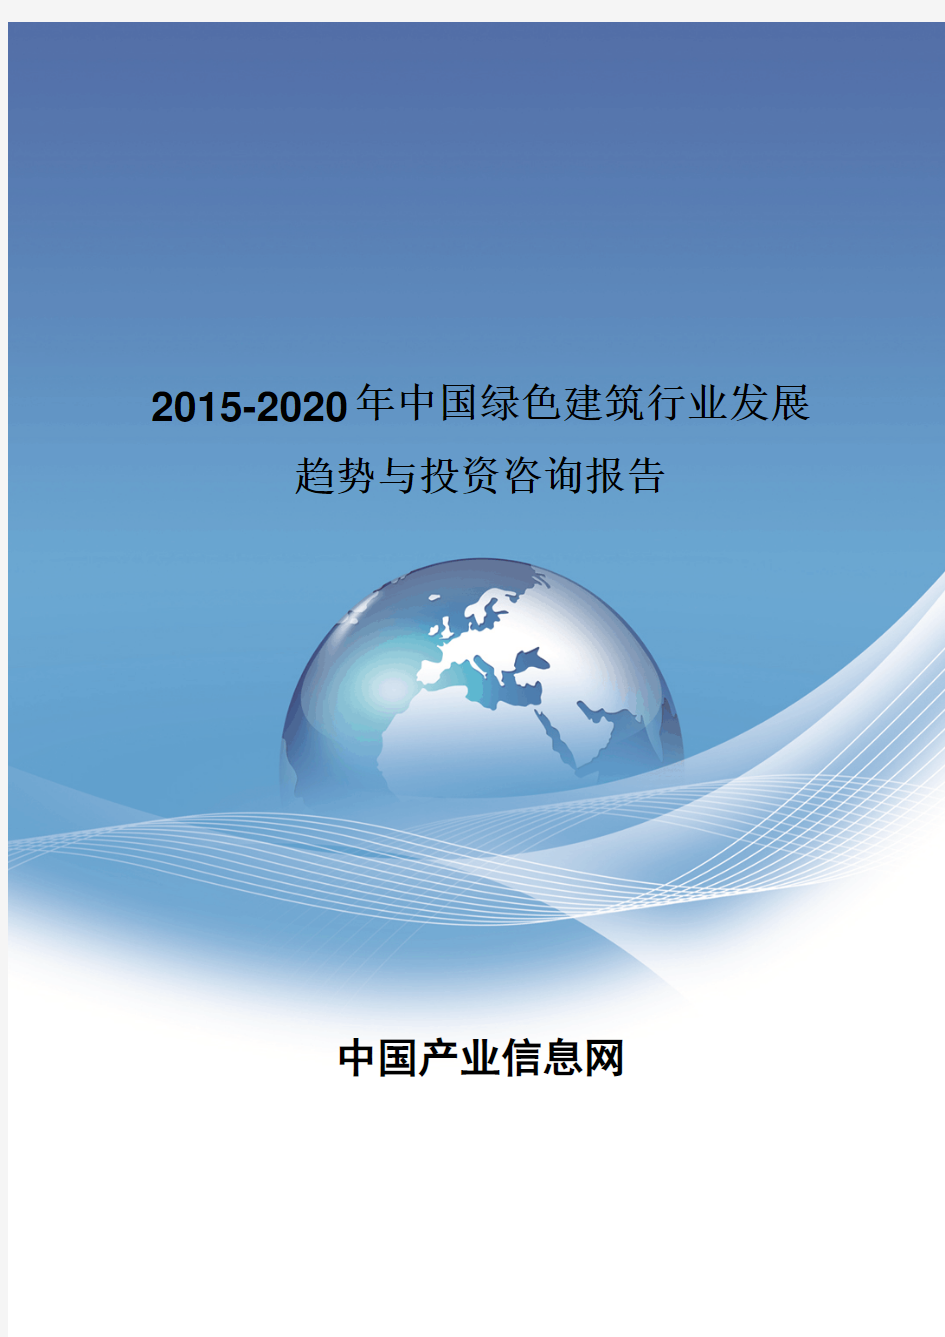 2015-2020年中国绿色建筑行业发展趋势报告